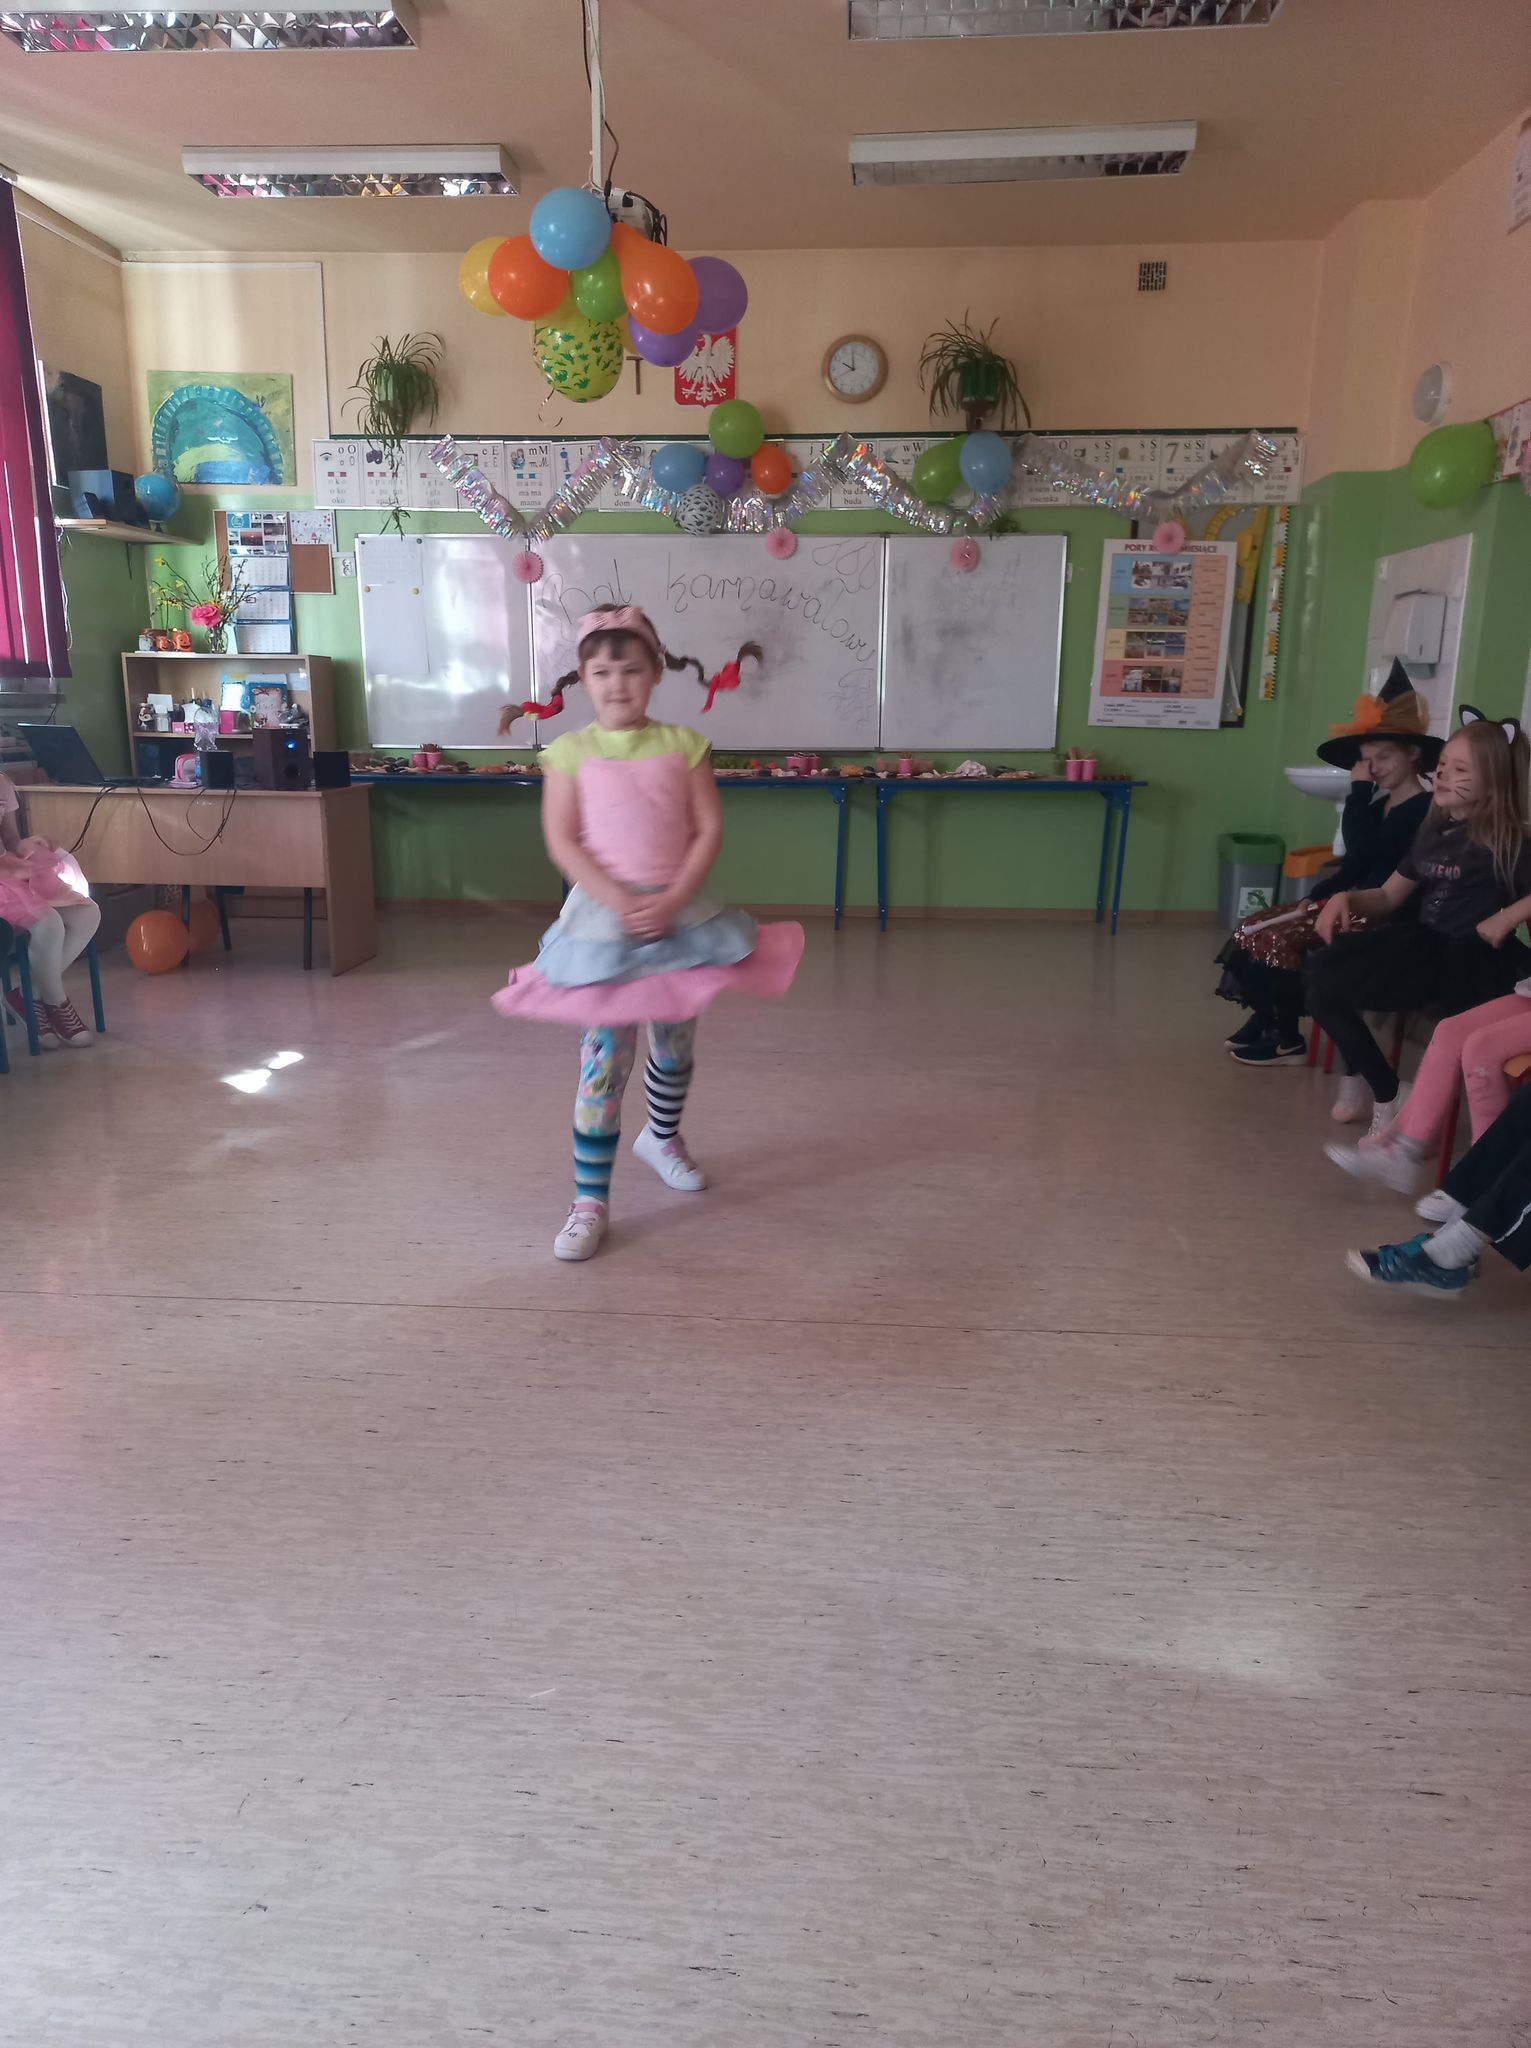 Dziewczynka z warkoczykami i różową sukienką na środku sali